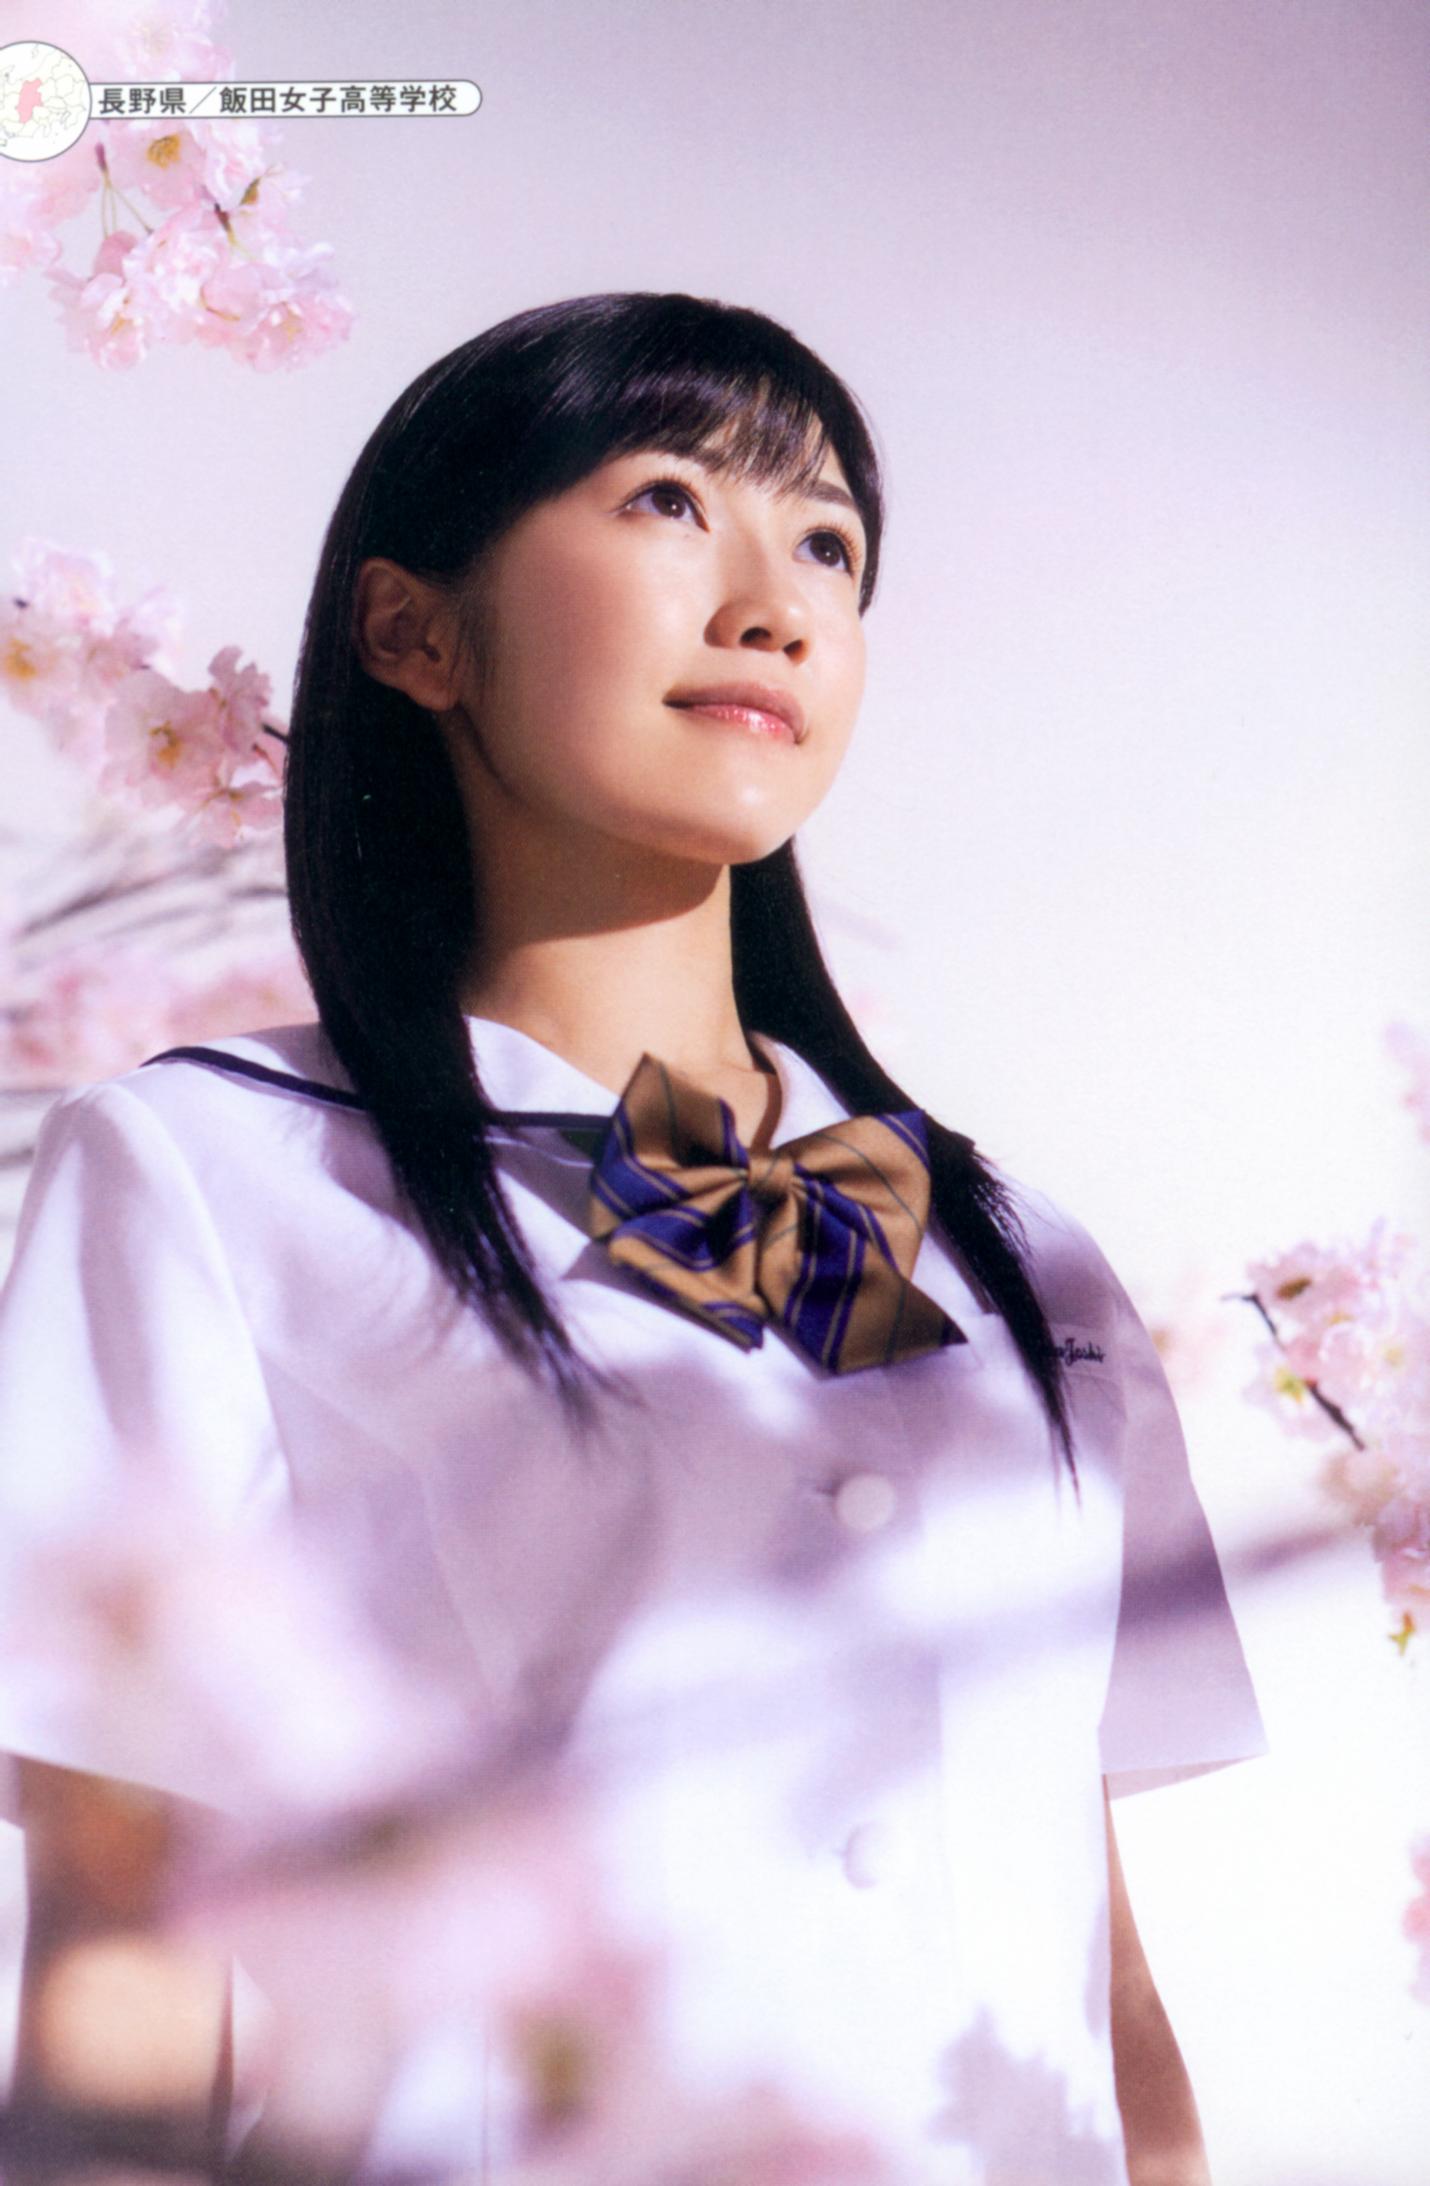 Watanabe Mayu Photobook 'Seifuku Zukan Saigo no Seifuku' - AKB48 Photo ...